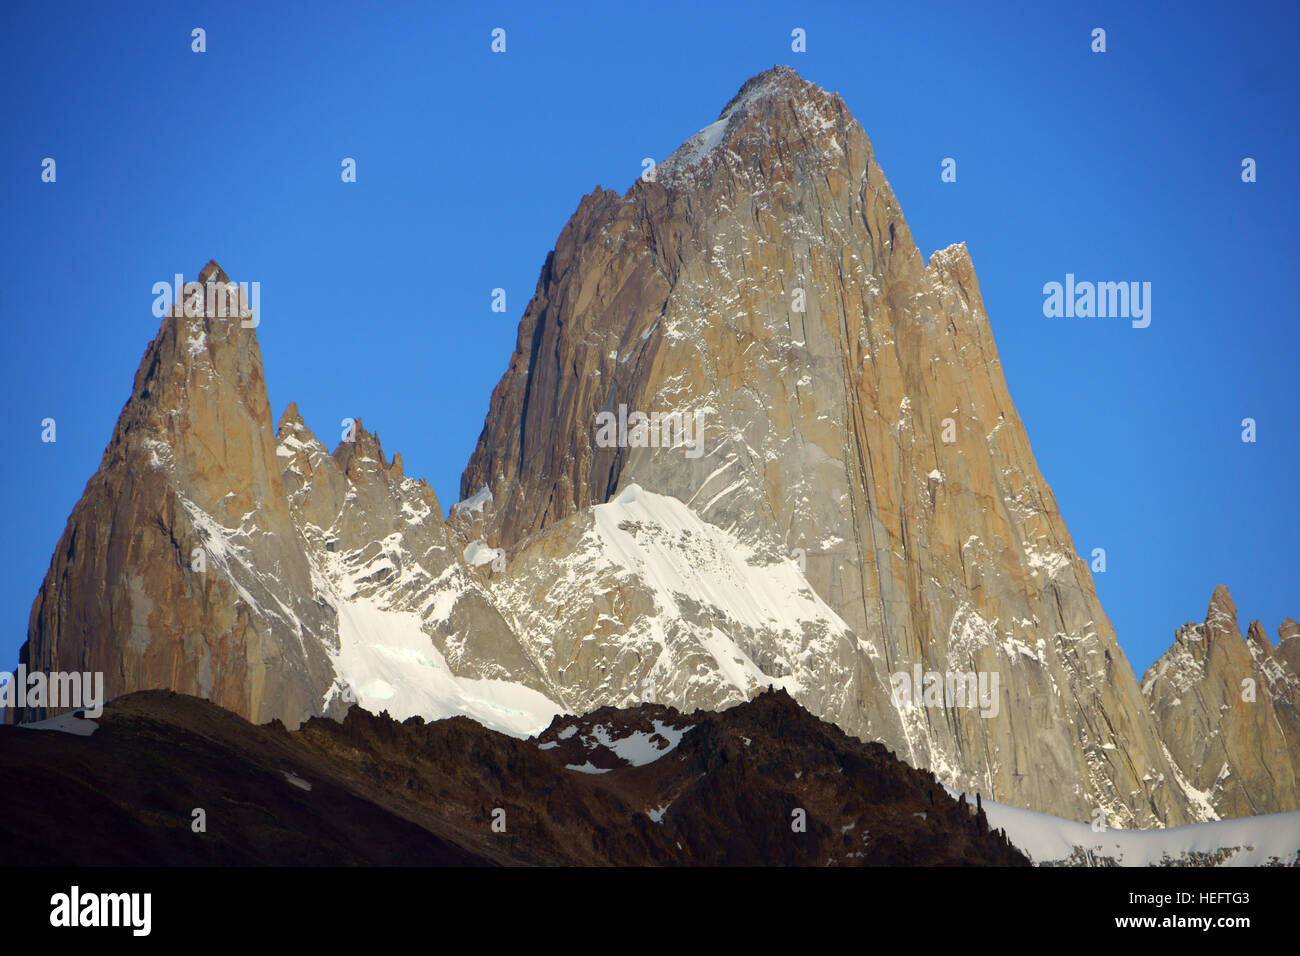 Cerro Fitz Roy from El Chalten, Los Glaciares National Park, Patagonia, Argentina Stock Photo